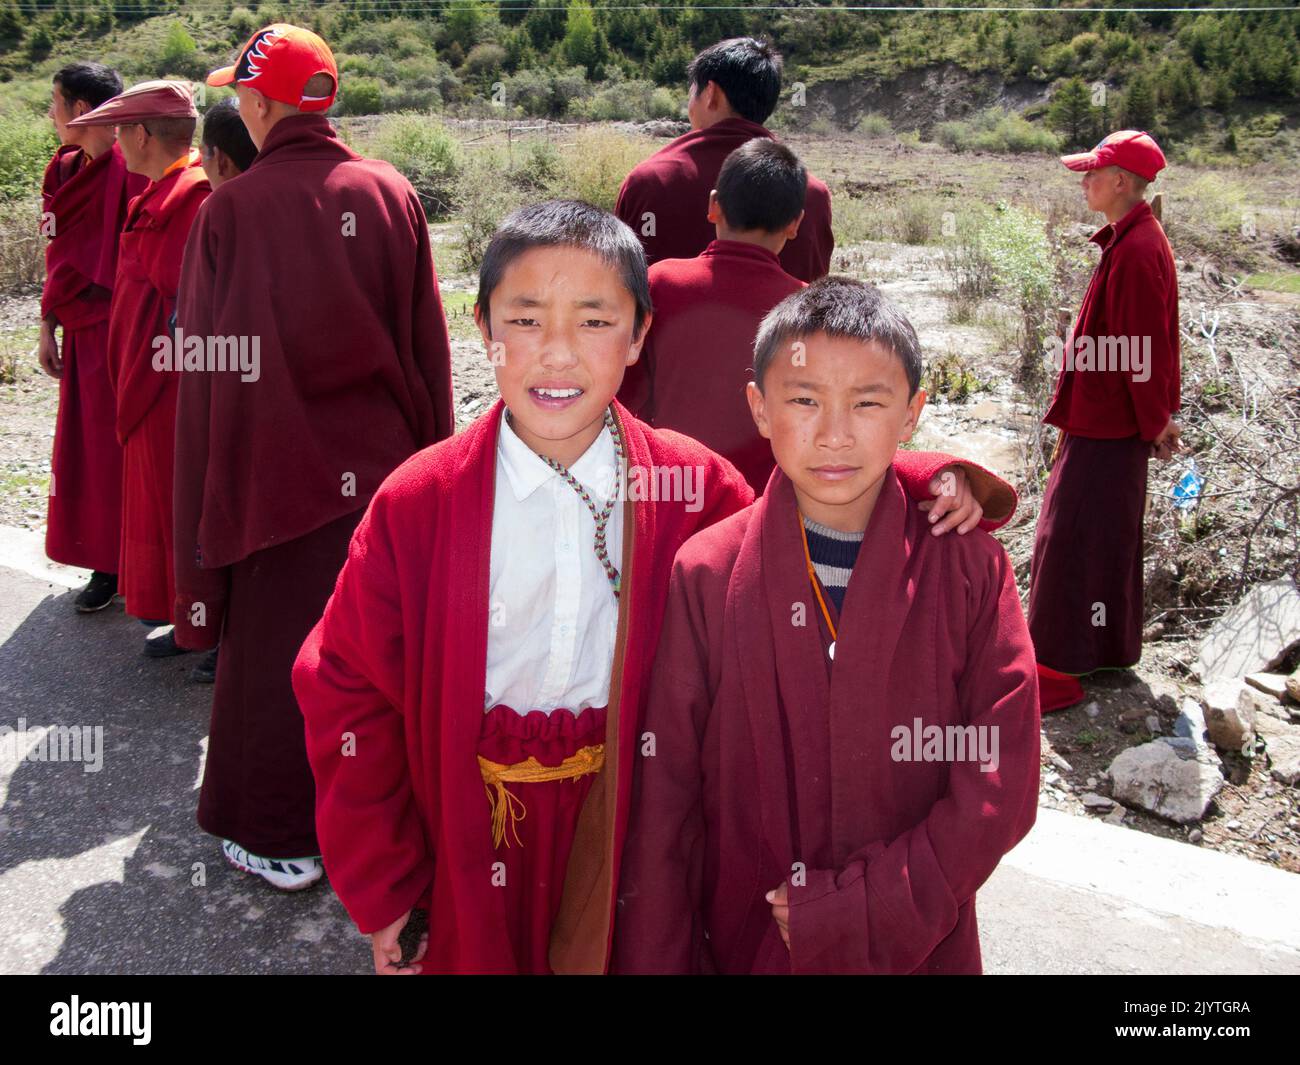 Ragazzi monaco / monaci novizi in un piccolo villaggio tibetano al di fuori della città antica di Songpan, nella provincia settentrionale del Sichuan (cinese), Cina. PRC. Amministrata dalla Prefettura Autonoma di Ngawa Tibetana e Qiang. (126) Foto Stock